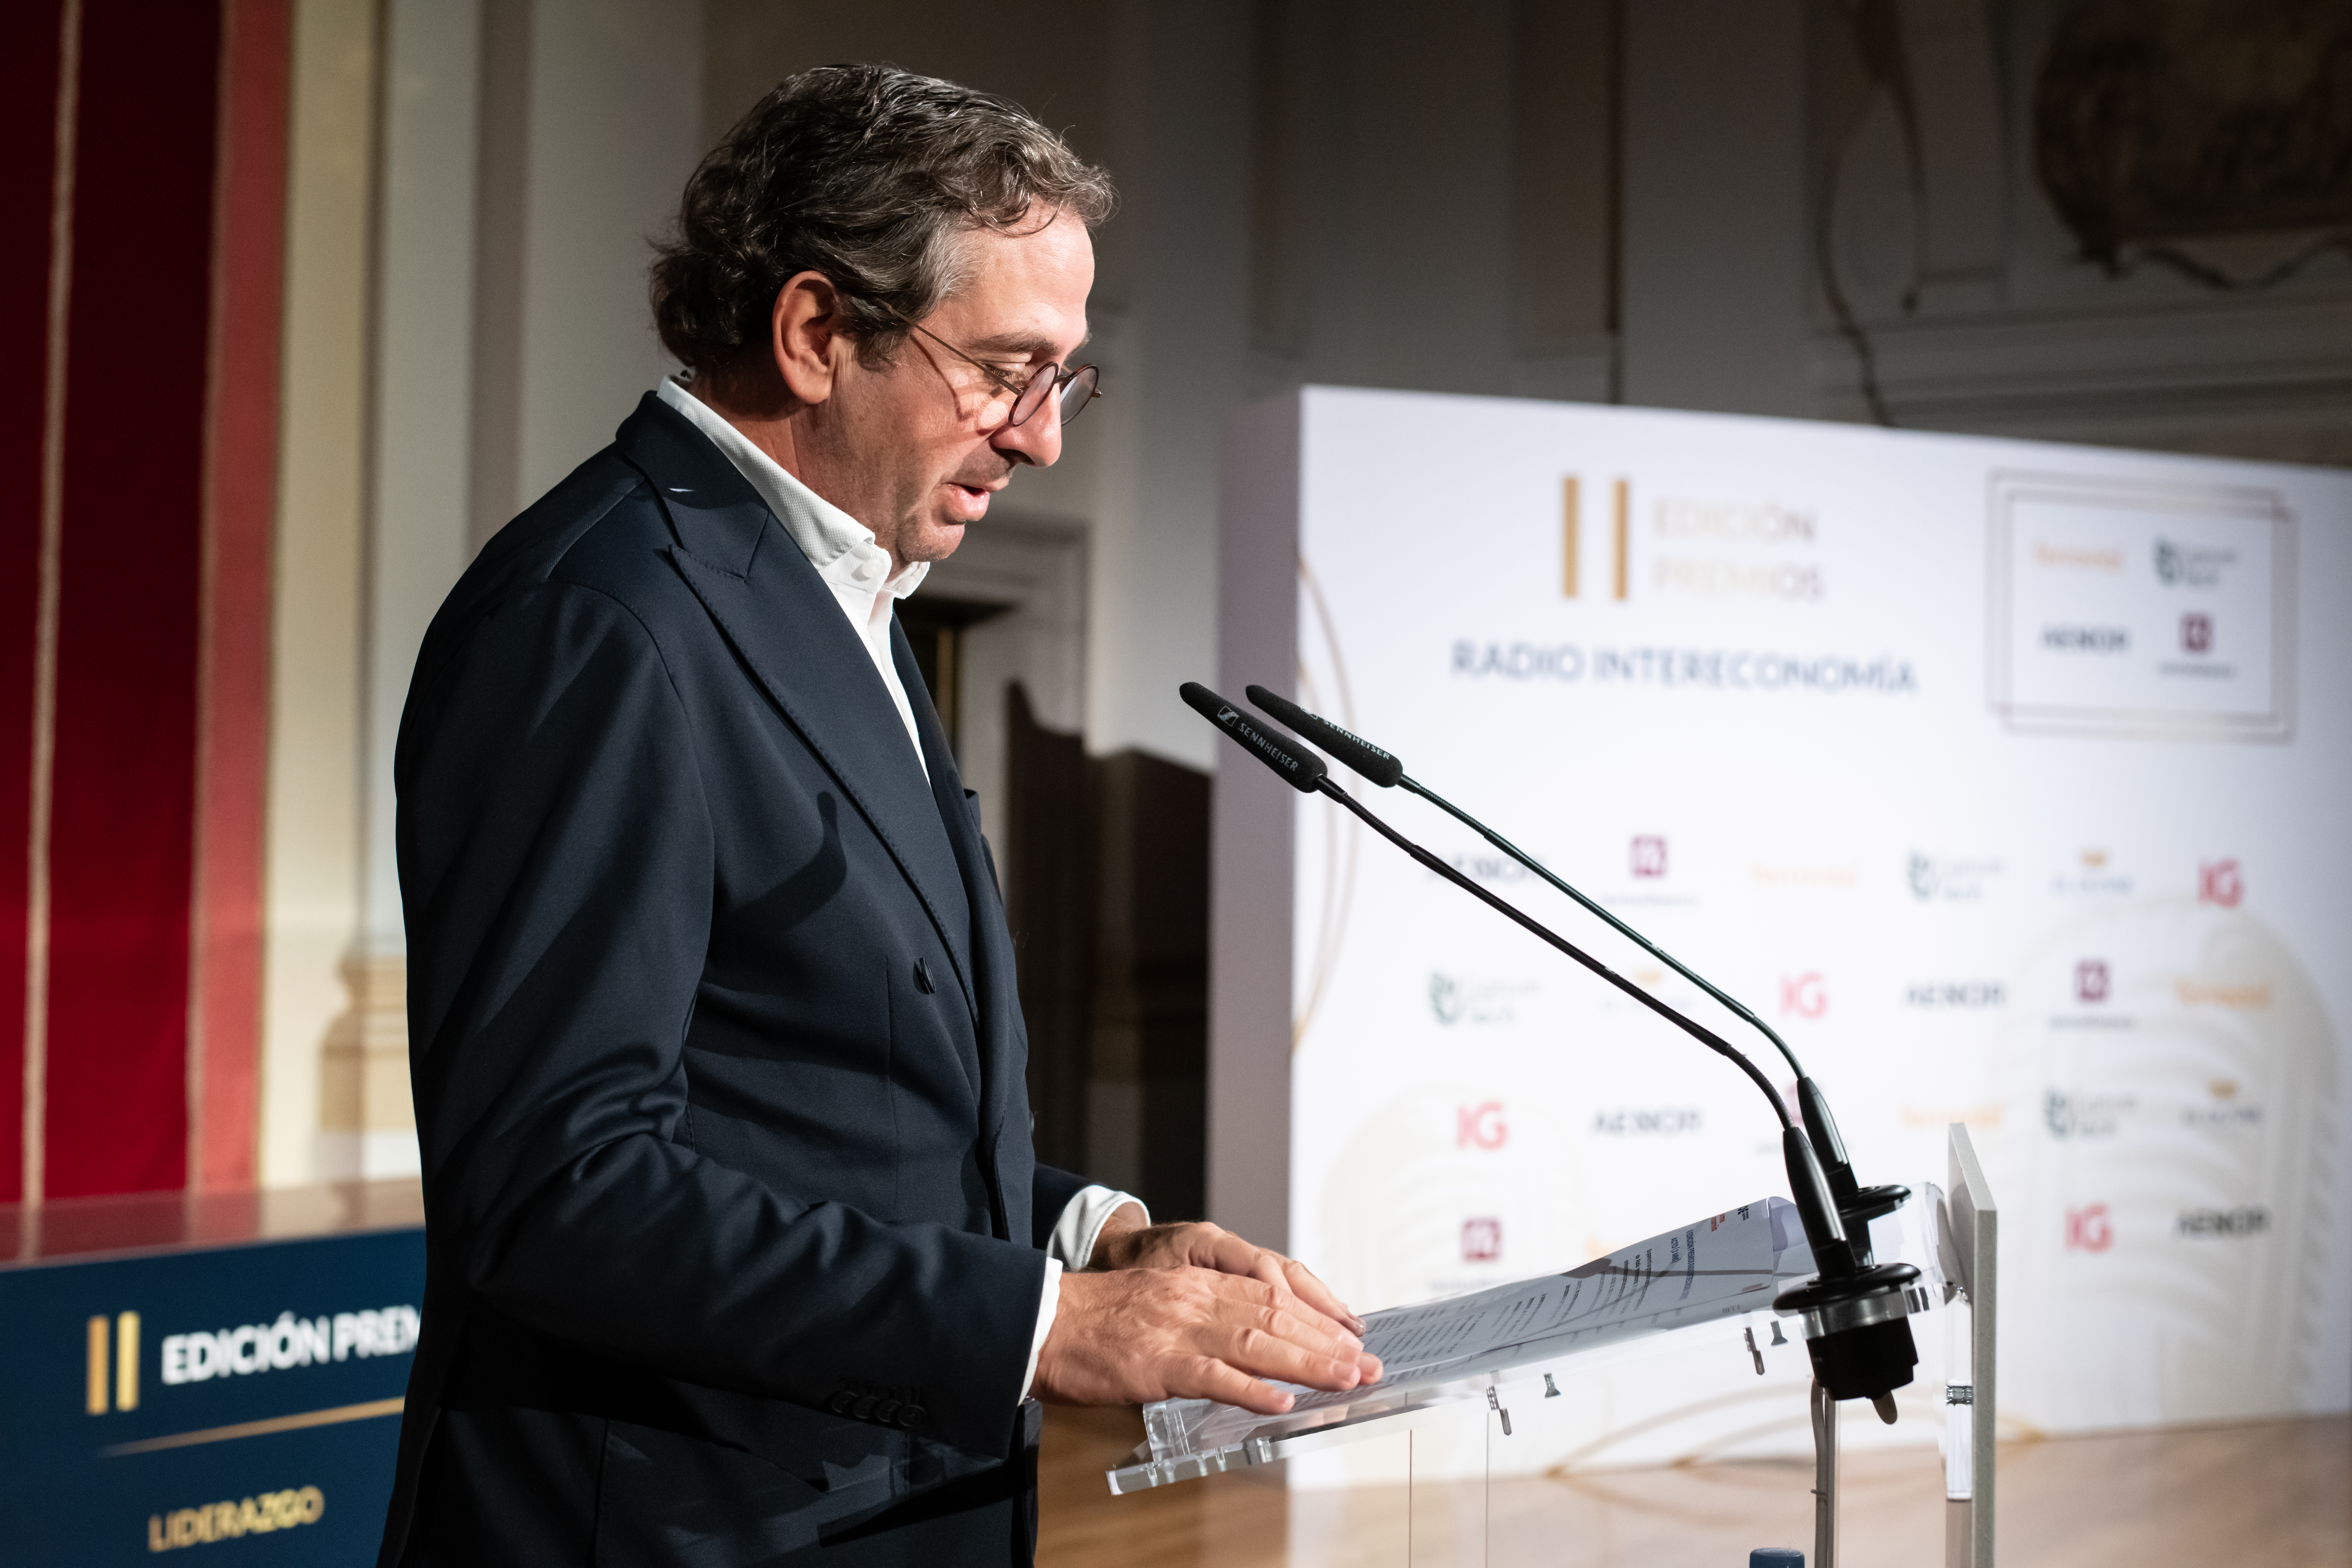 Los Premios de Radio Intereconomía son un referente en el panorama nacional, afirma Fernández de Mesa en la gala de entrega